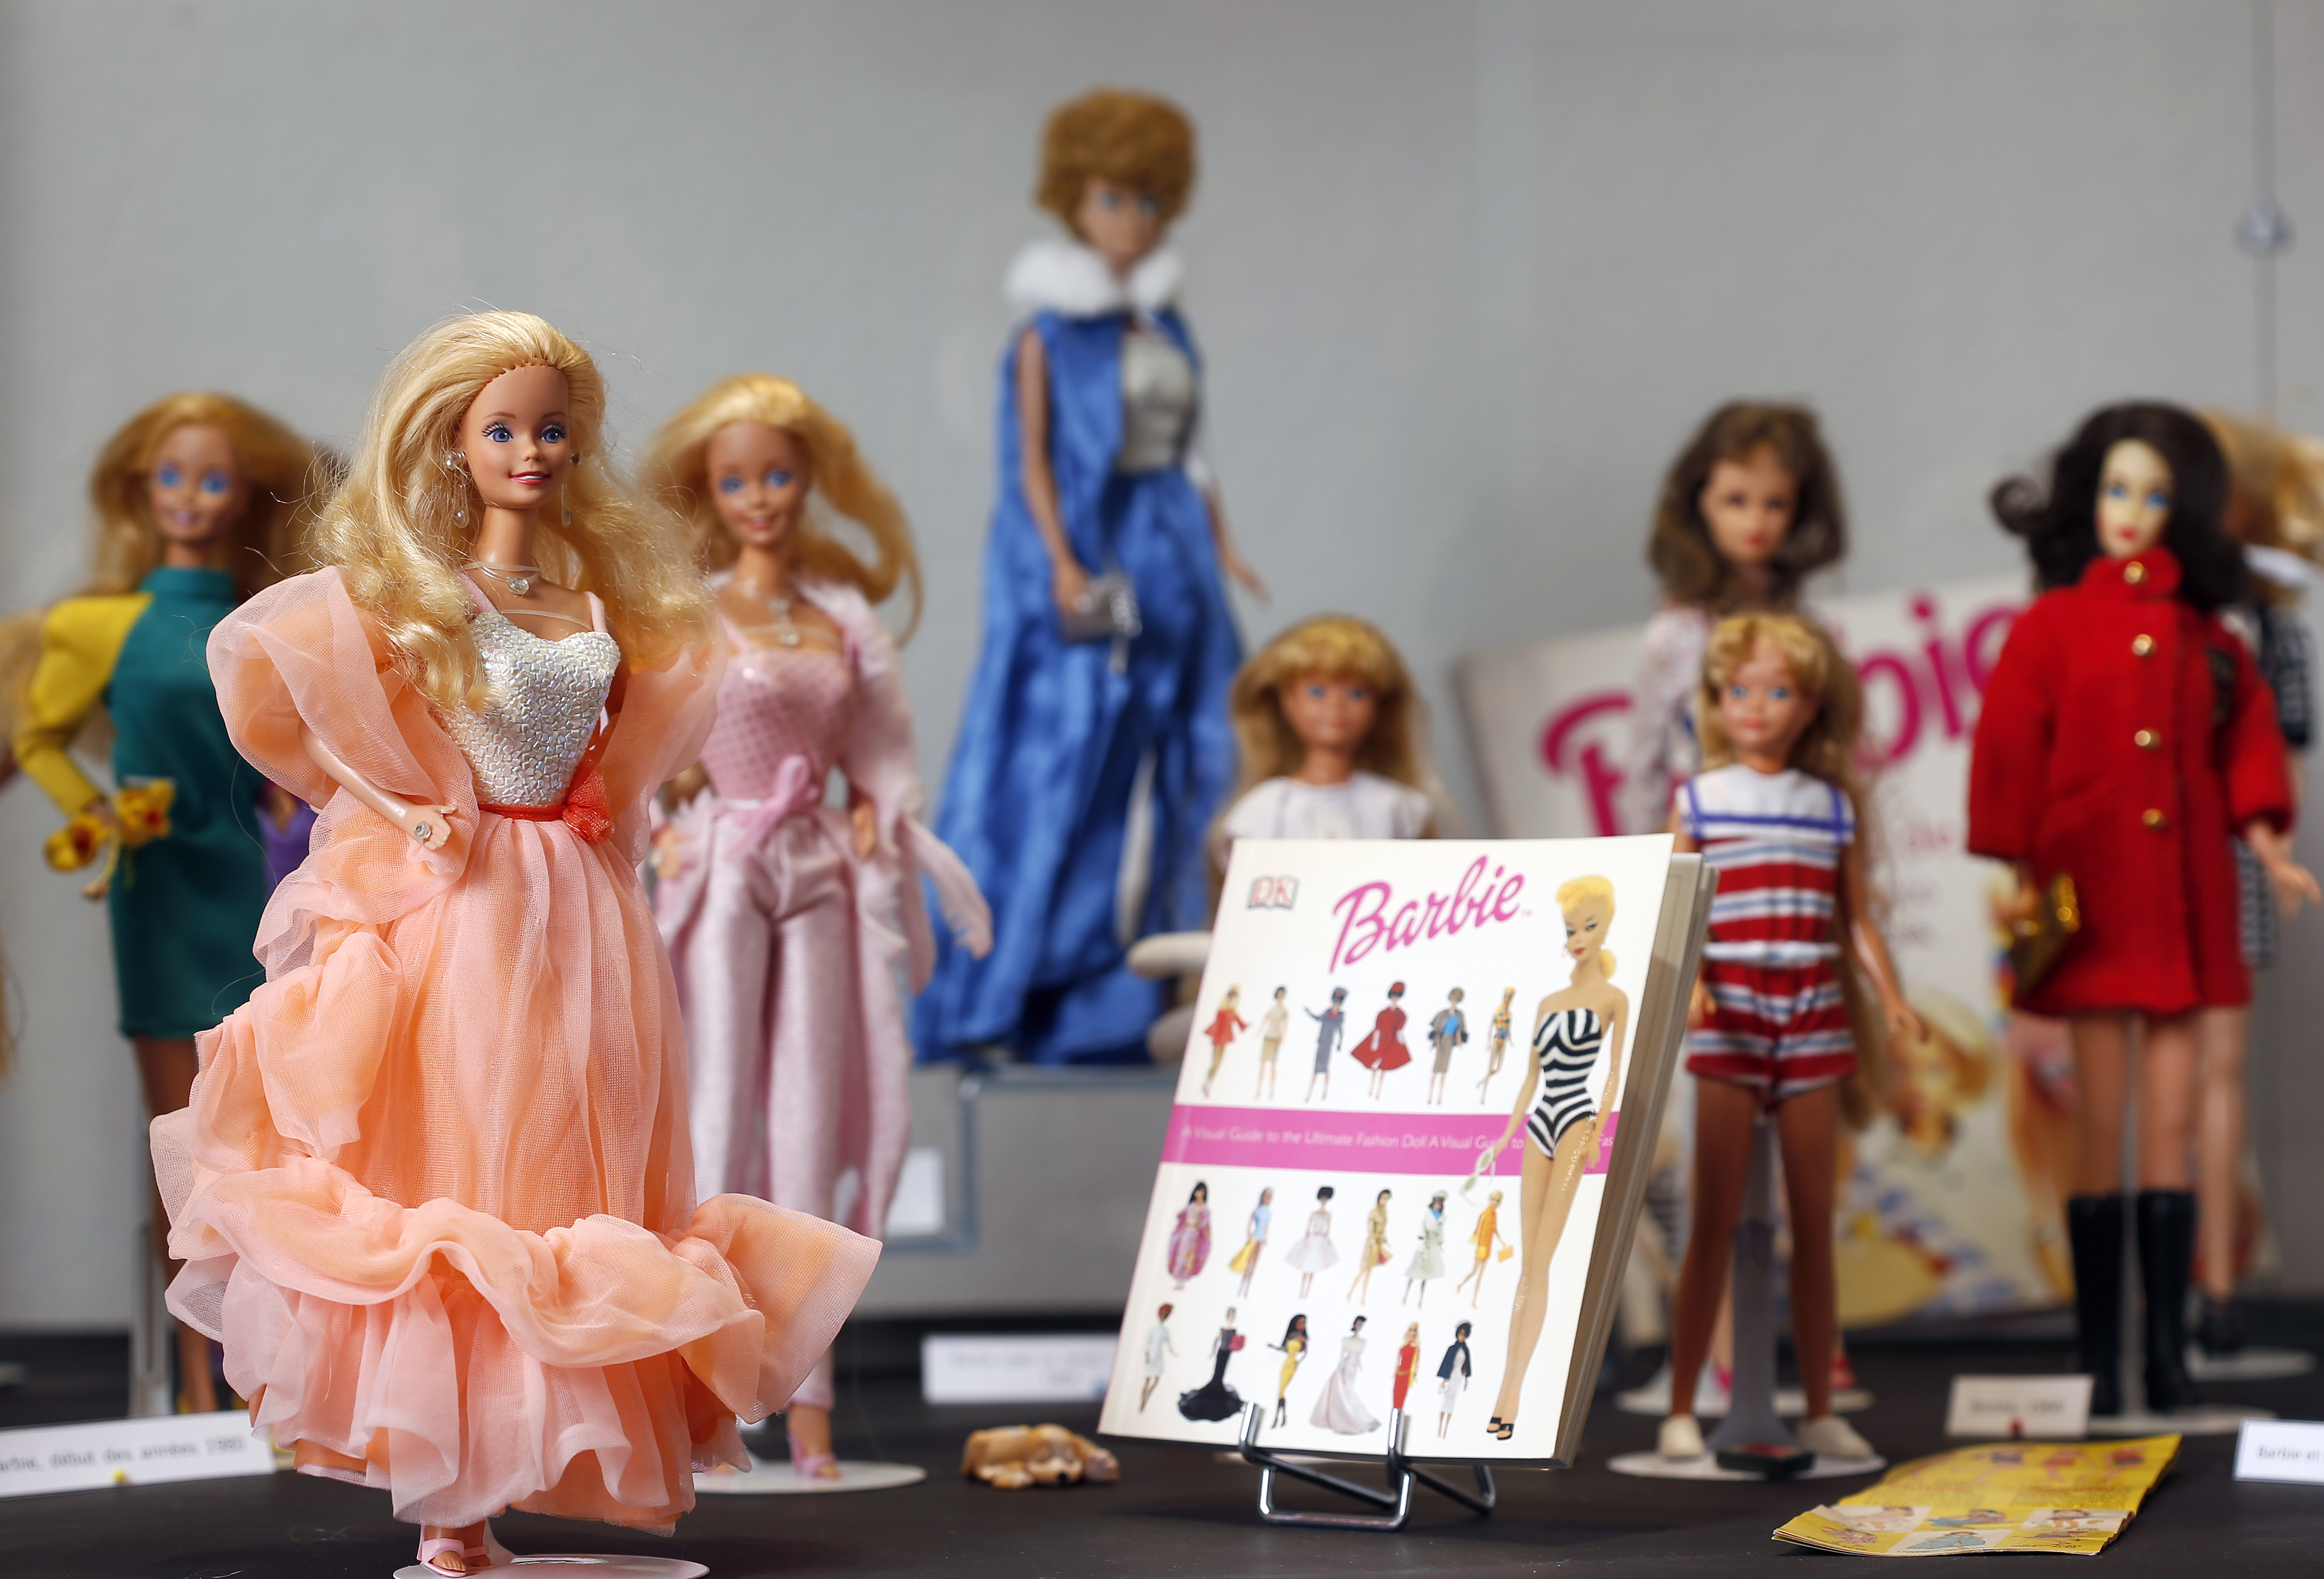 Ikonikus híresség lett az új Barbie baba - kiskegyed.hu